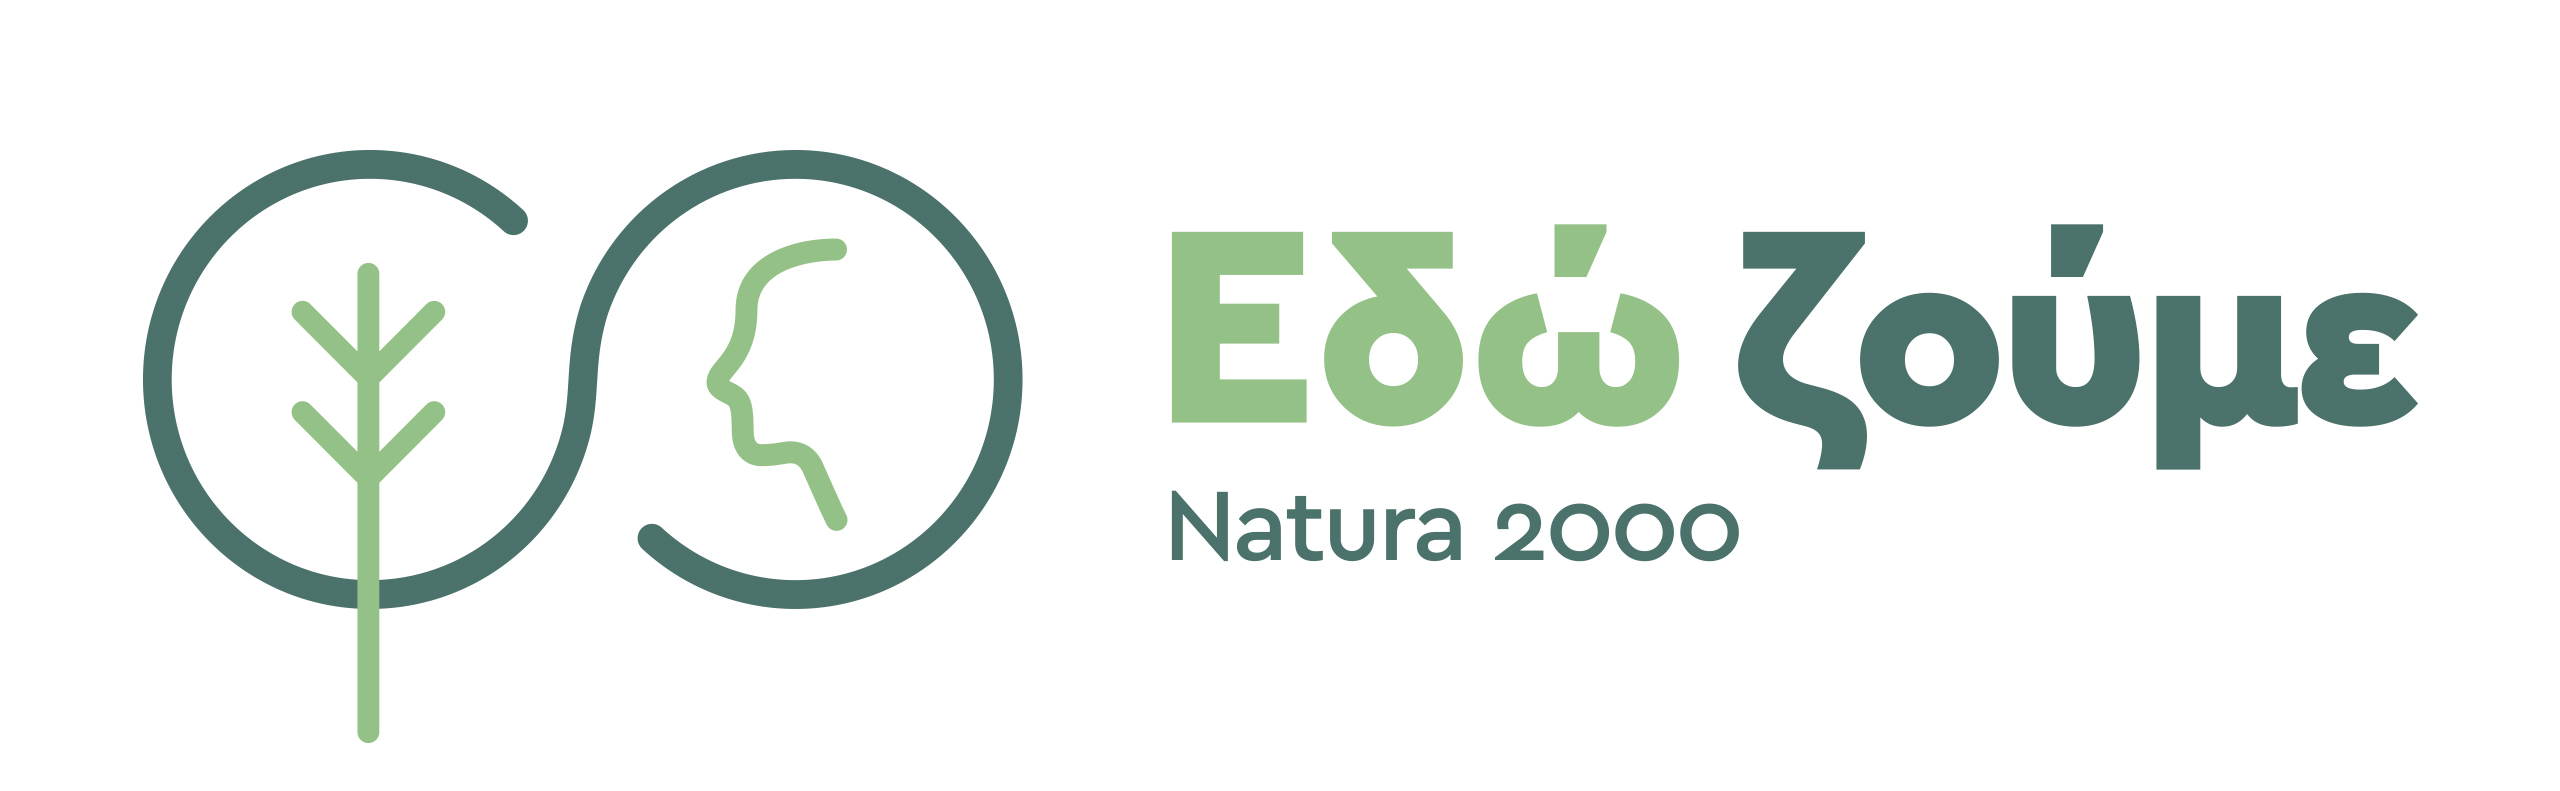 20180803 WWF logo natura2000 edozoume final 01